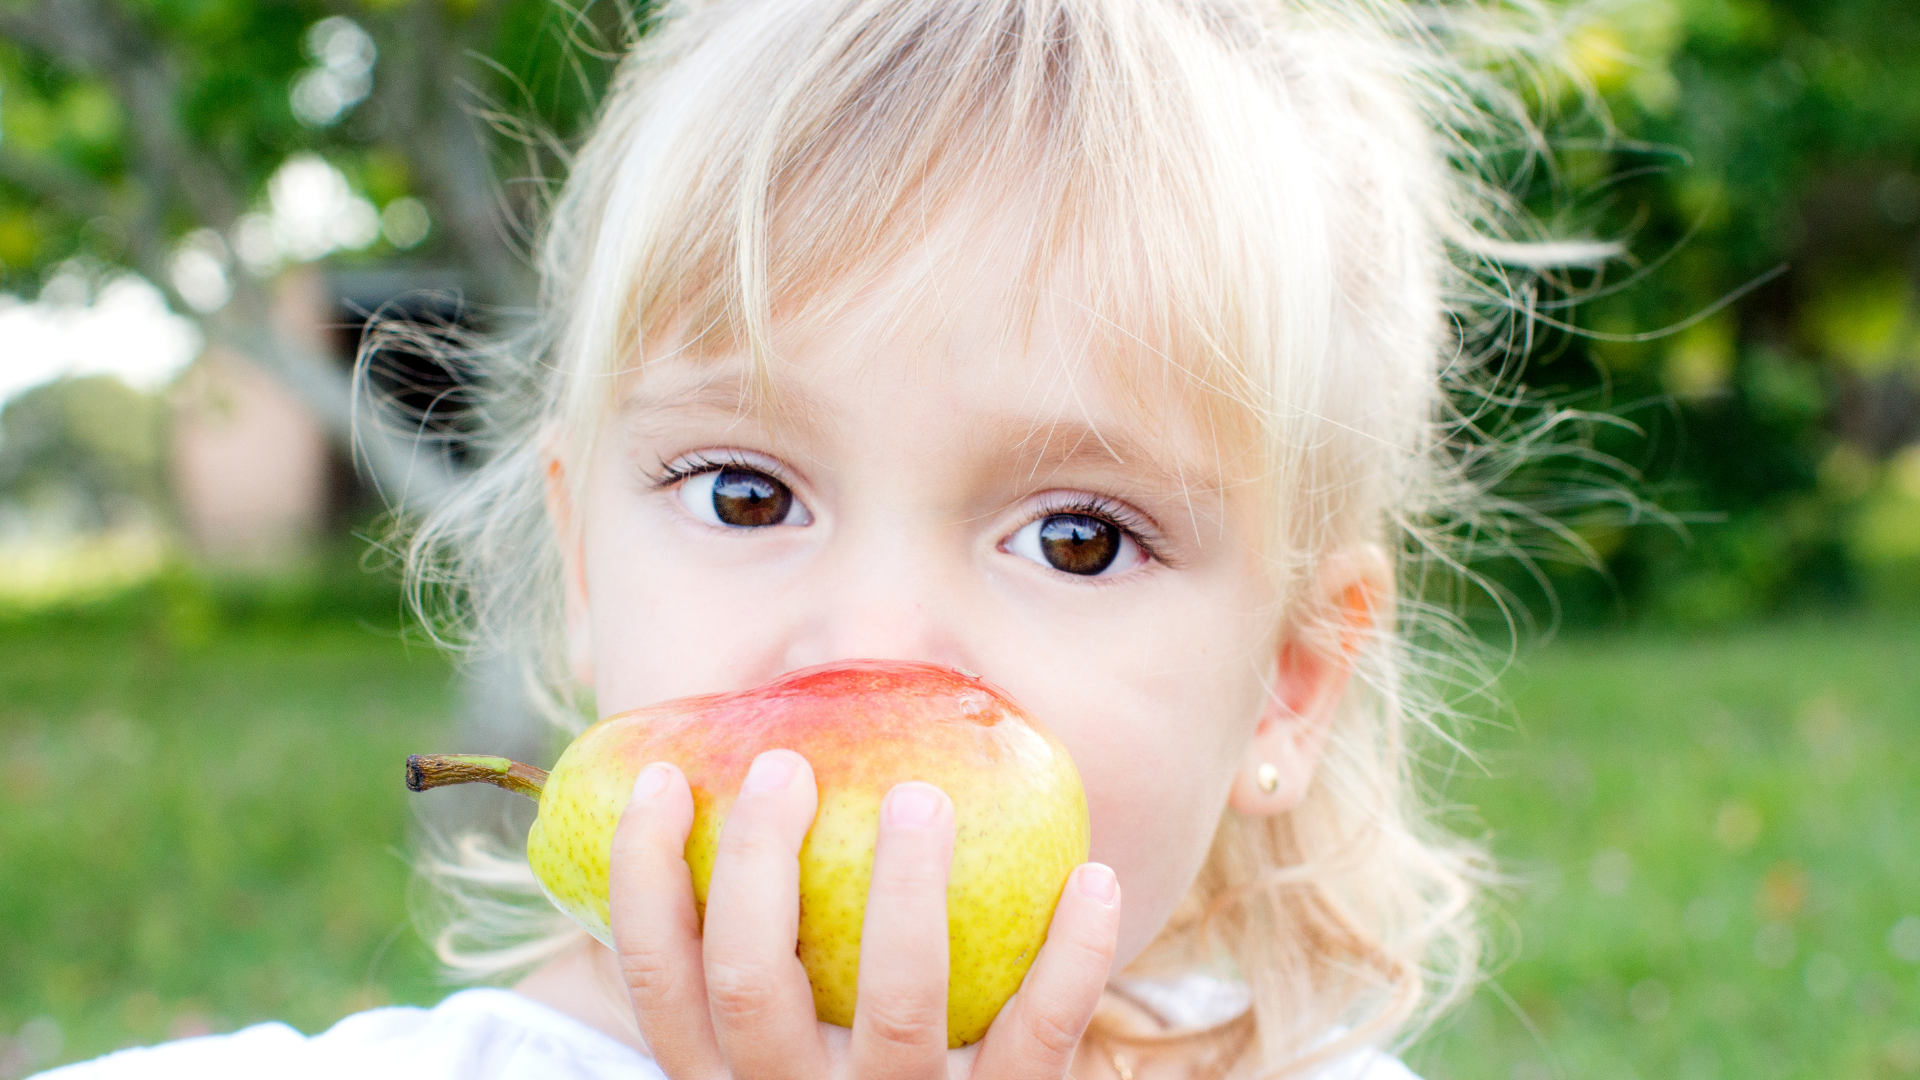 Foto de capa do artigo "Pera: 12 benefícios da fruta para começar a comer todo dia"